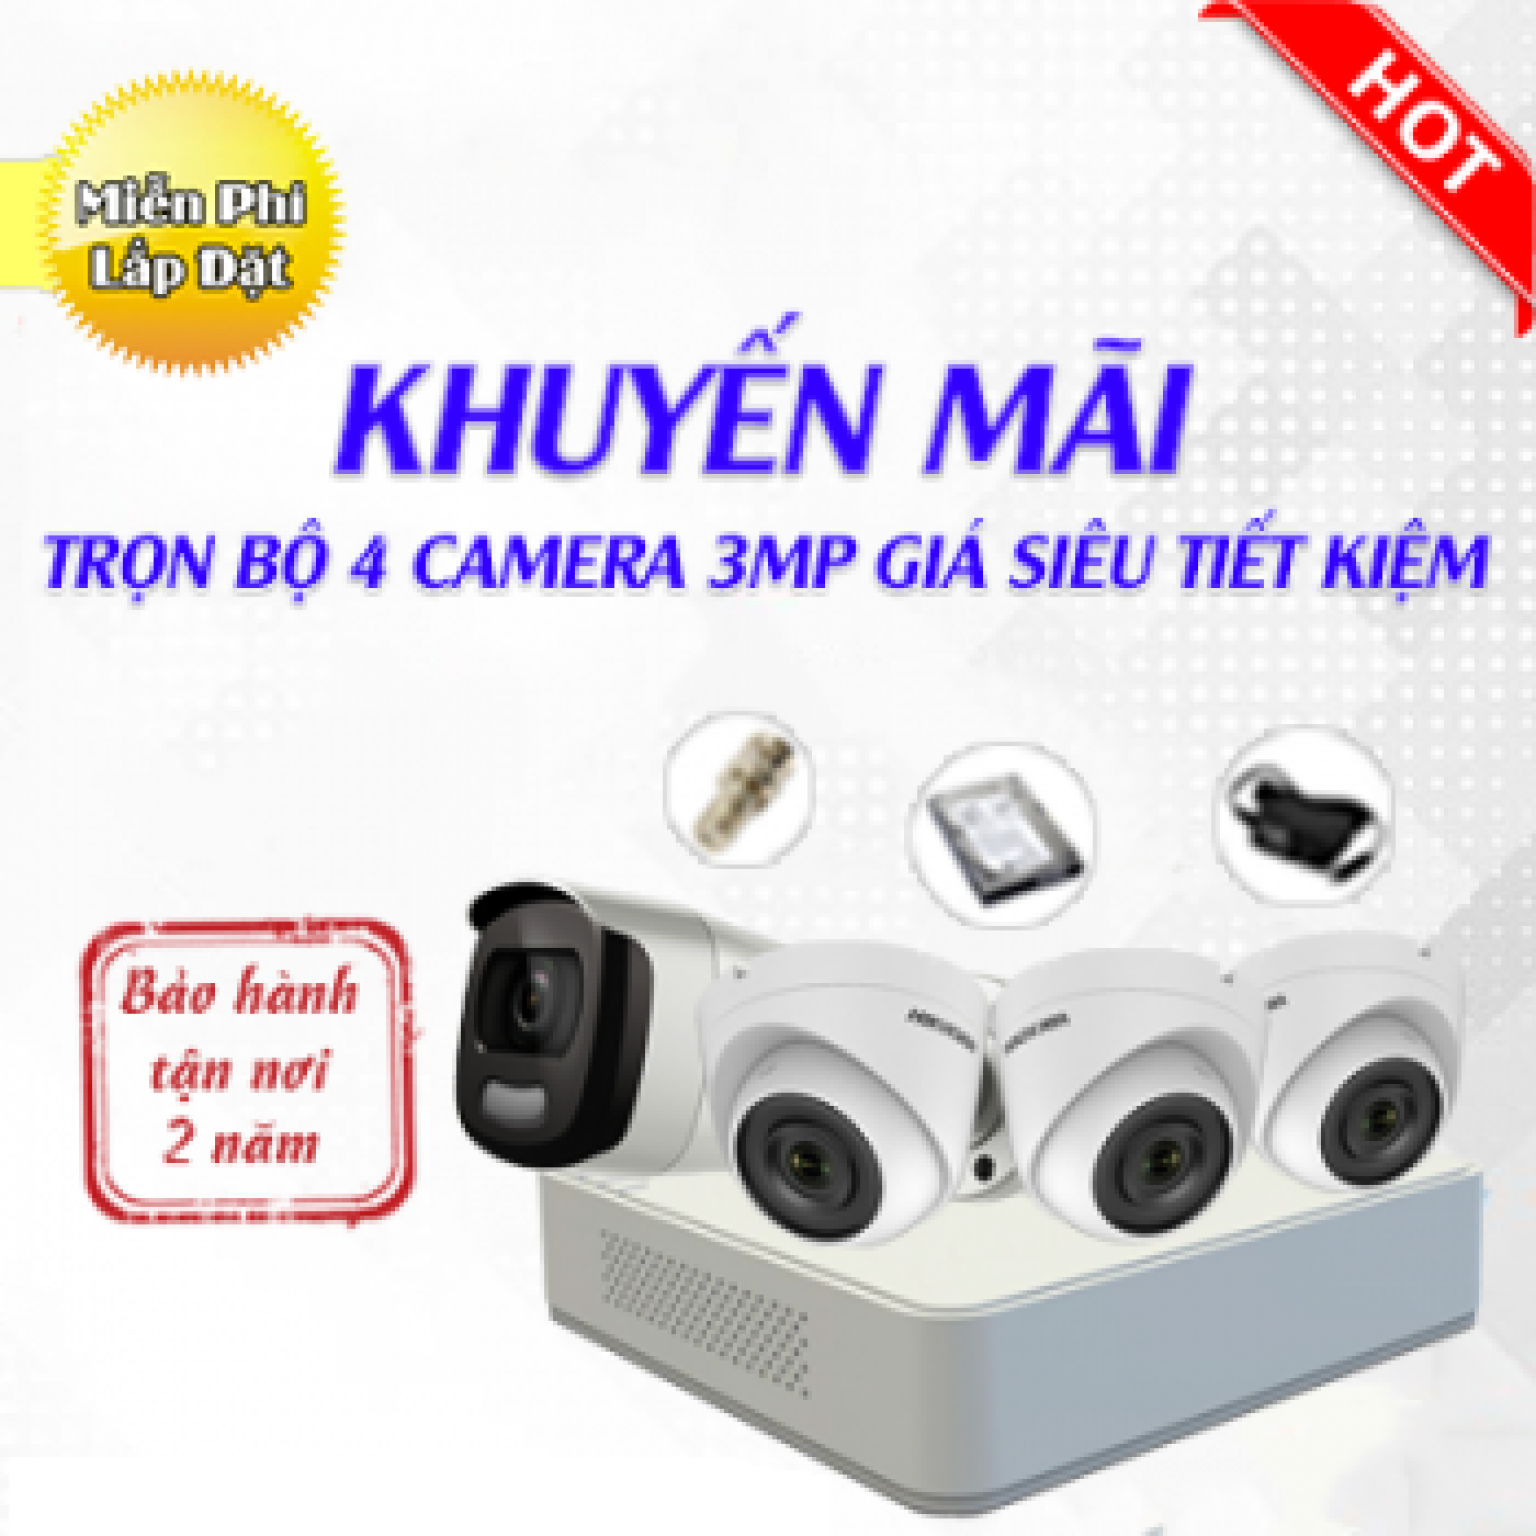 Trọn Bộ 4 Camera Hikvision 3MP Có Màu 24/7 - Sale Sập Sàn